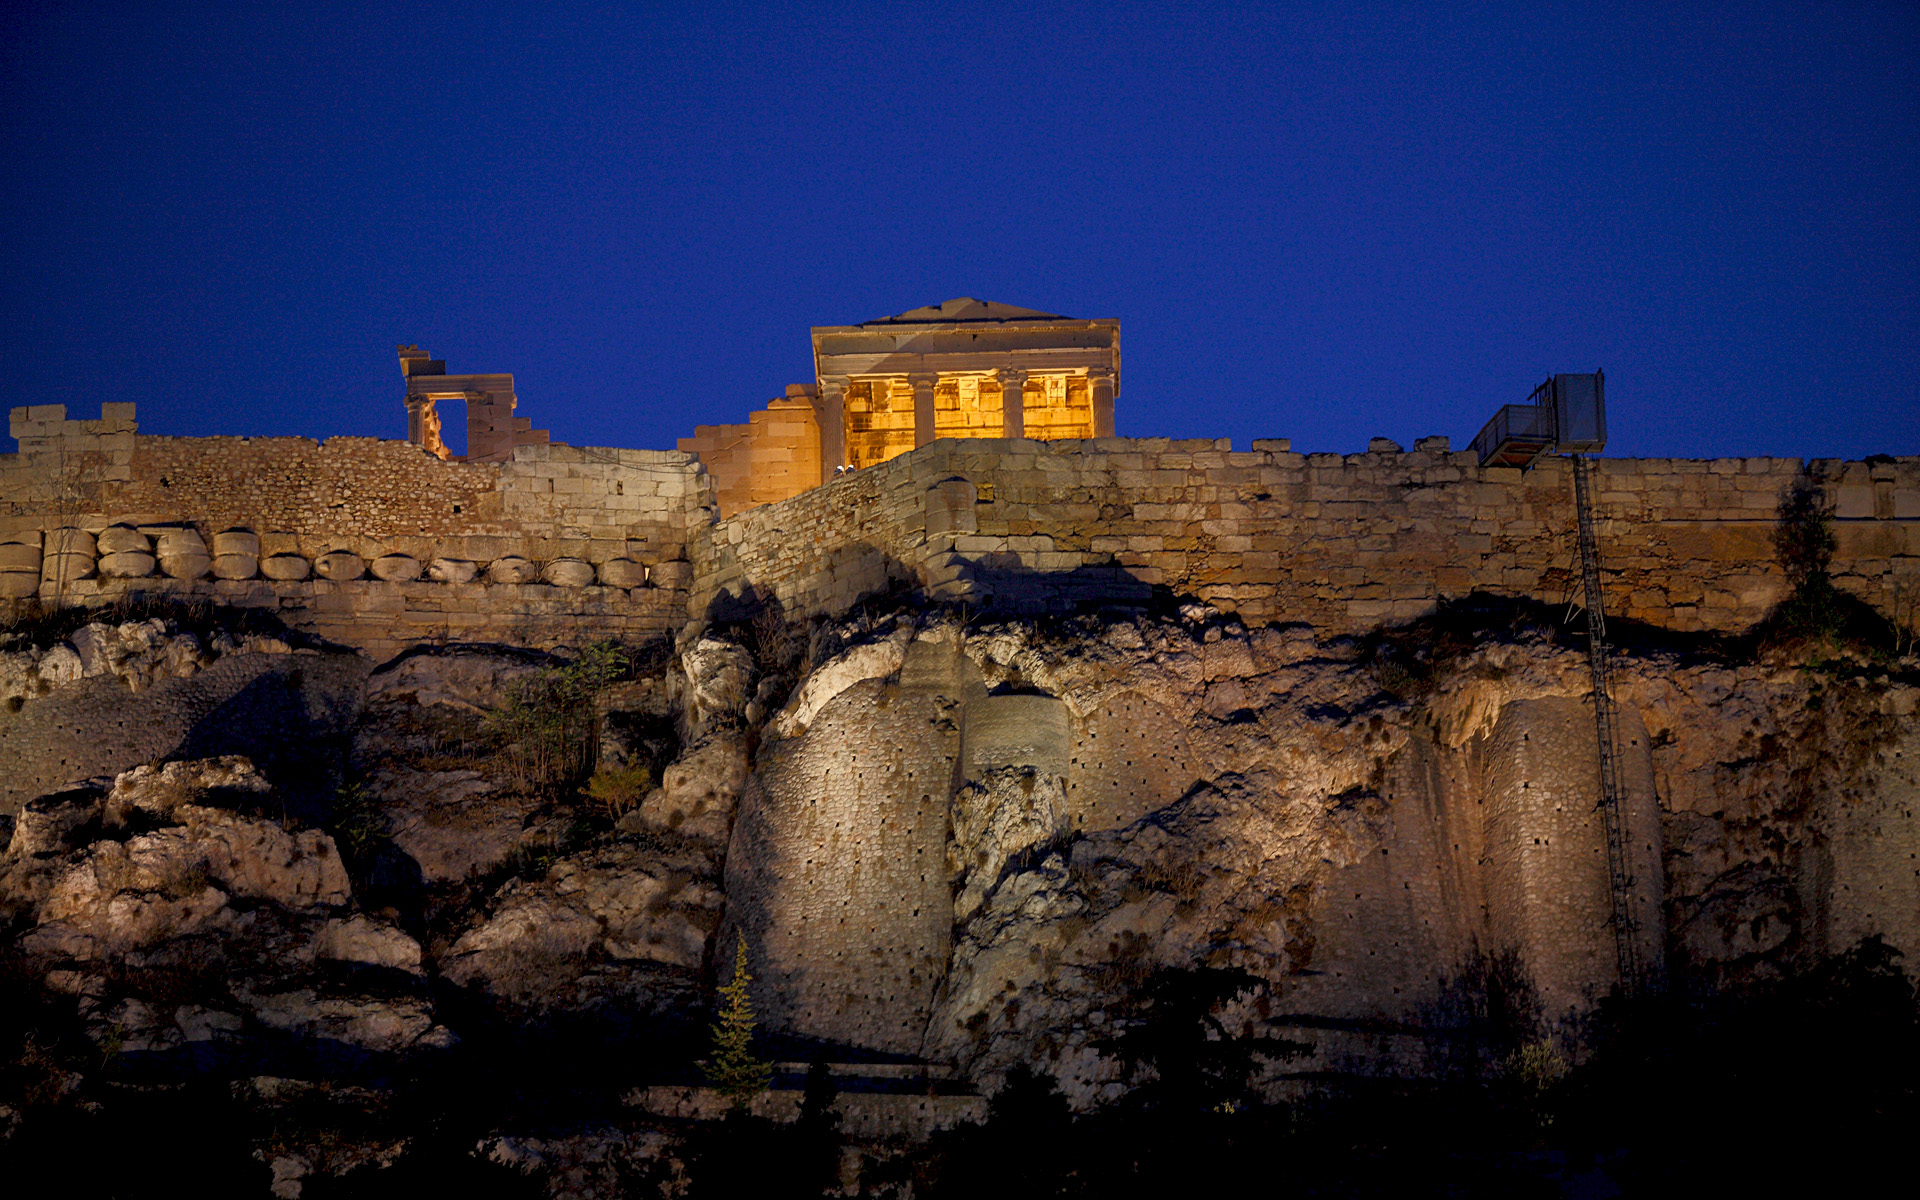 Akropol - pejzaż, fotografia podróżnicza, fotografia nocna